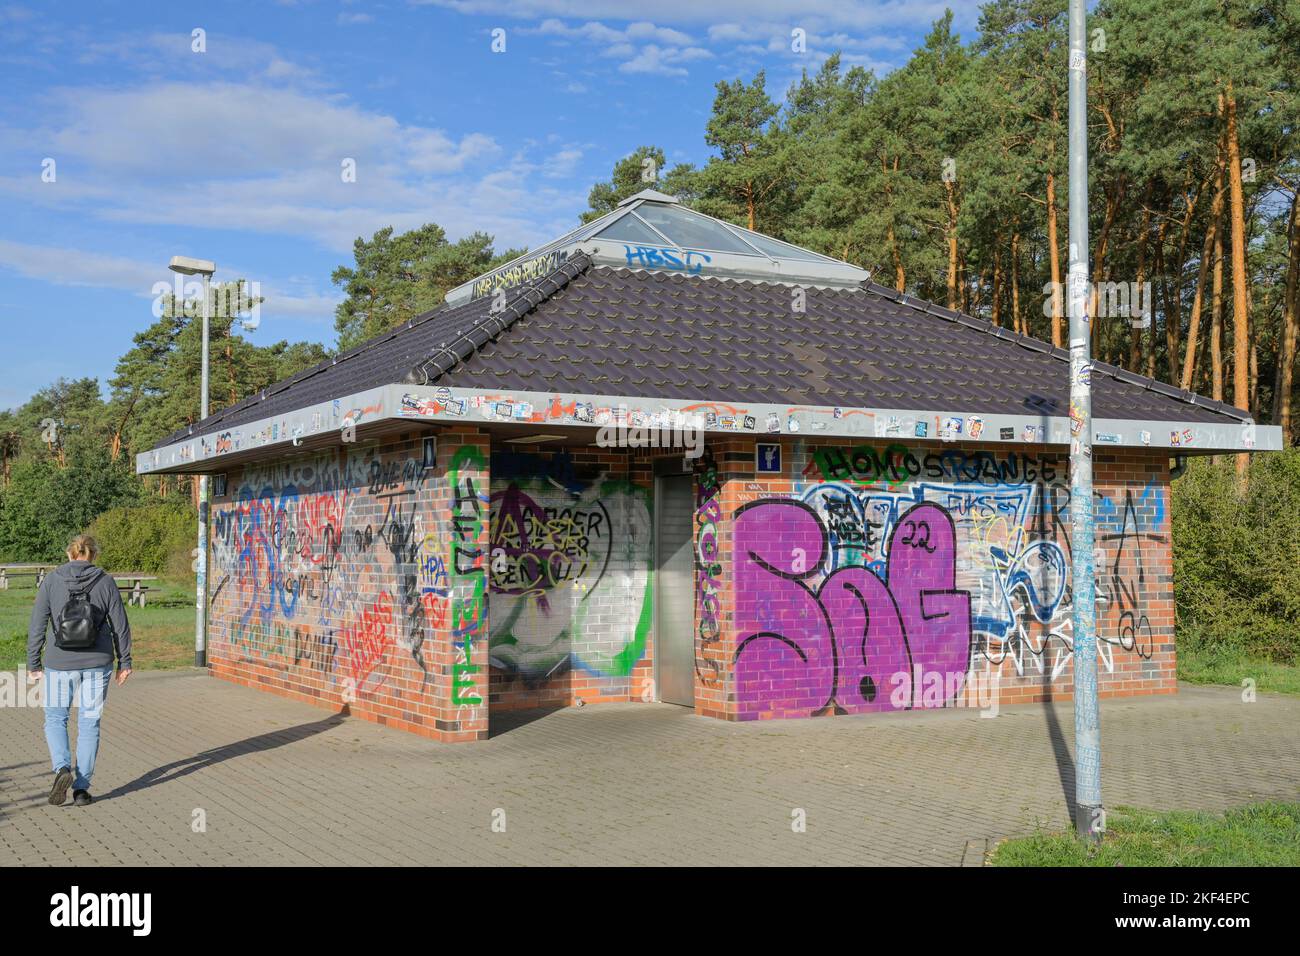 Graffiti, Autobahnraststätte, Toilette Stock Photo